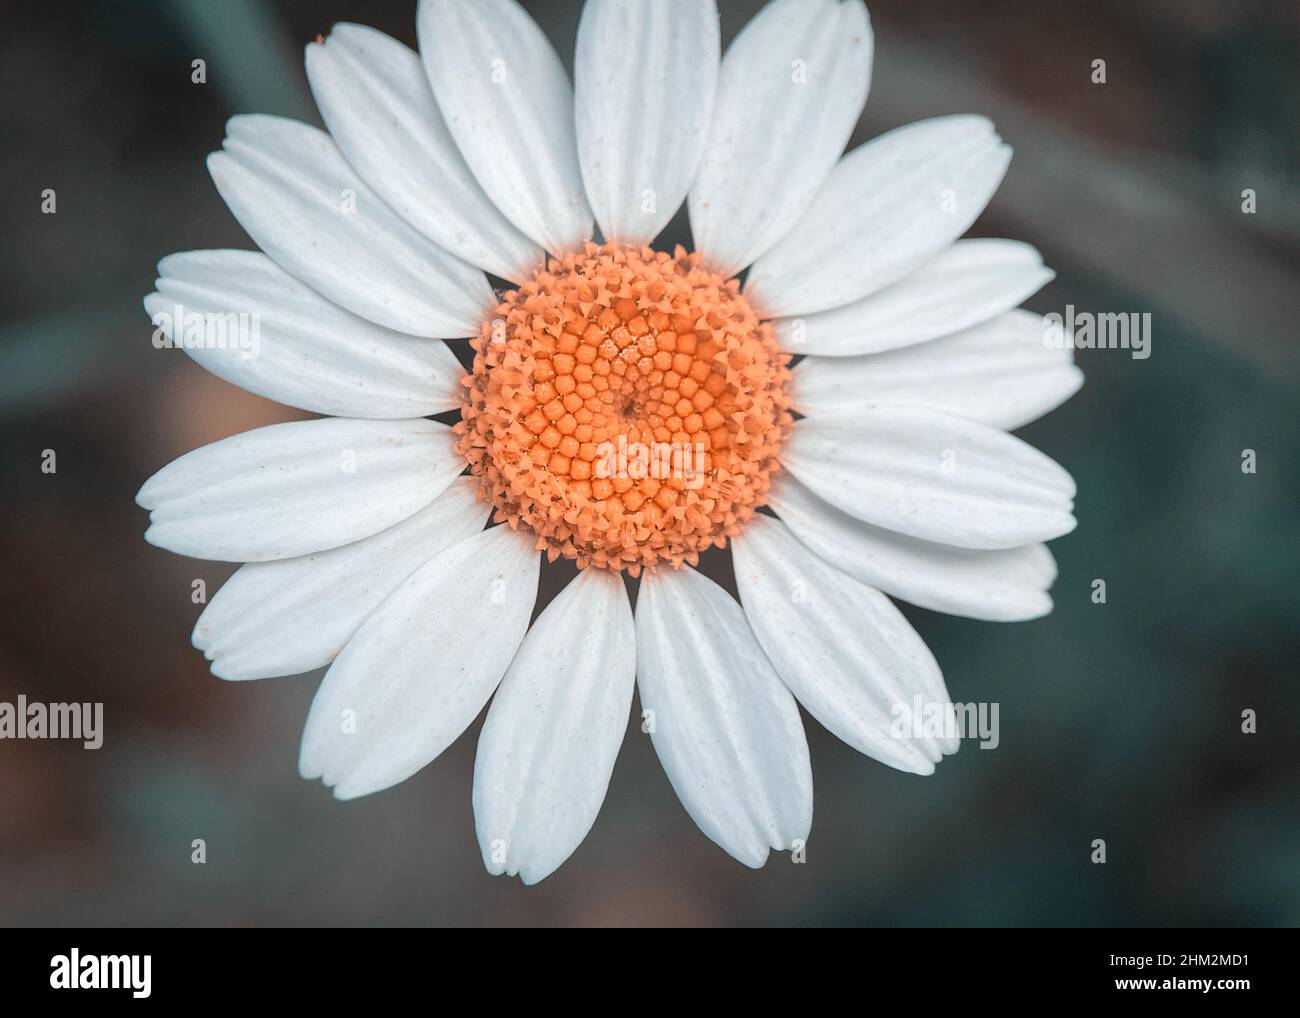 Macro shot of Chamomile or daisy flower fibonacci pattern Stock Photo